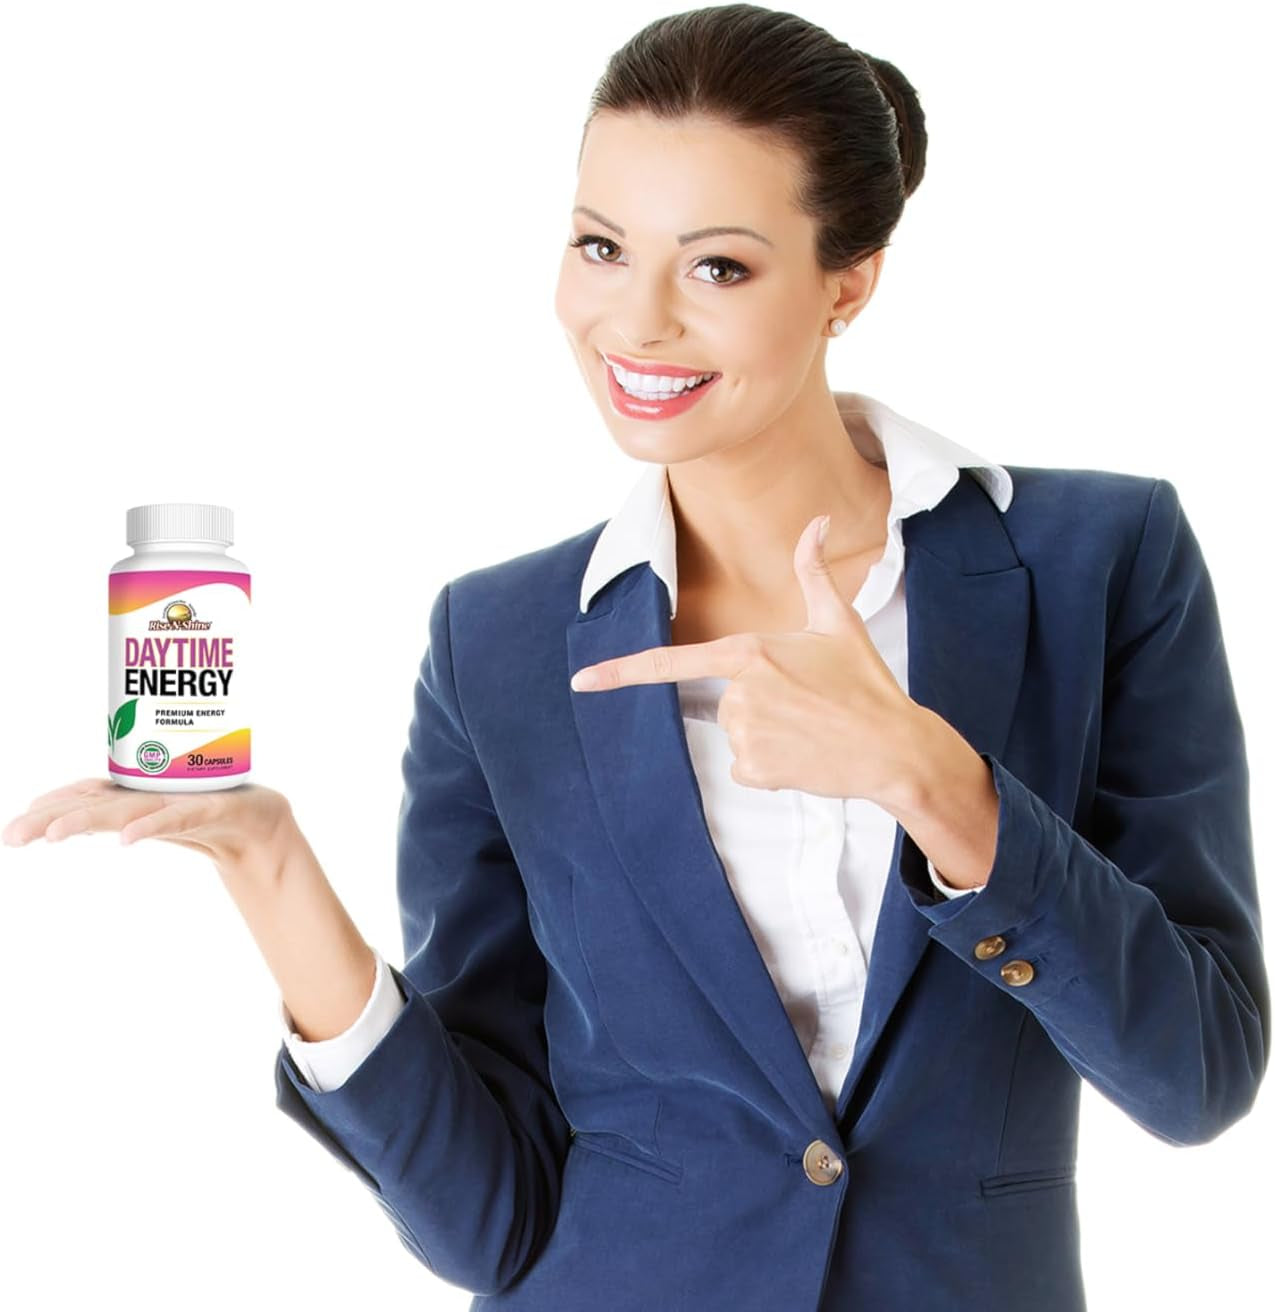 RISE-N-SHINE Daytime Energy Supplement for Men & Women - Vitamin B6, B12 and Caffeine Blend (30 Capsules)